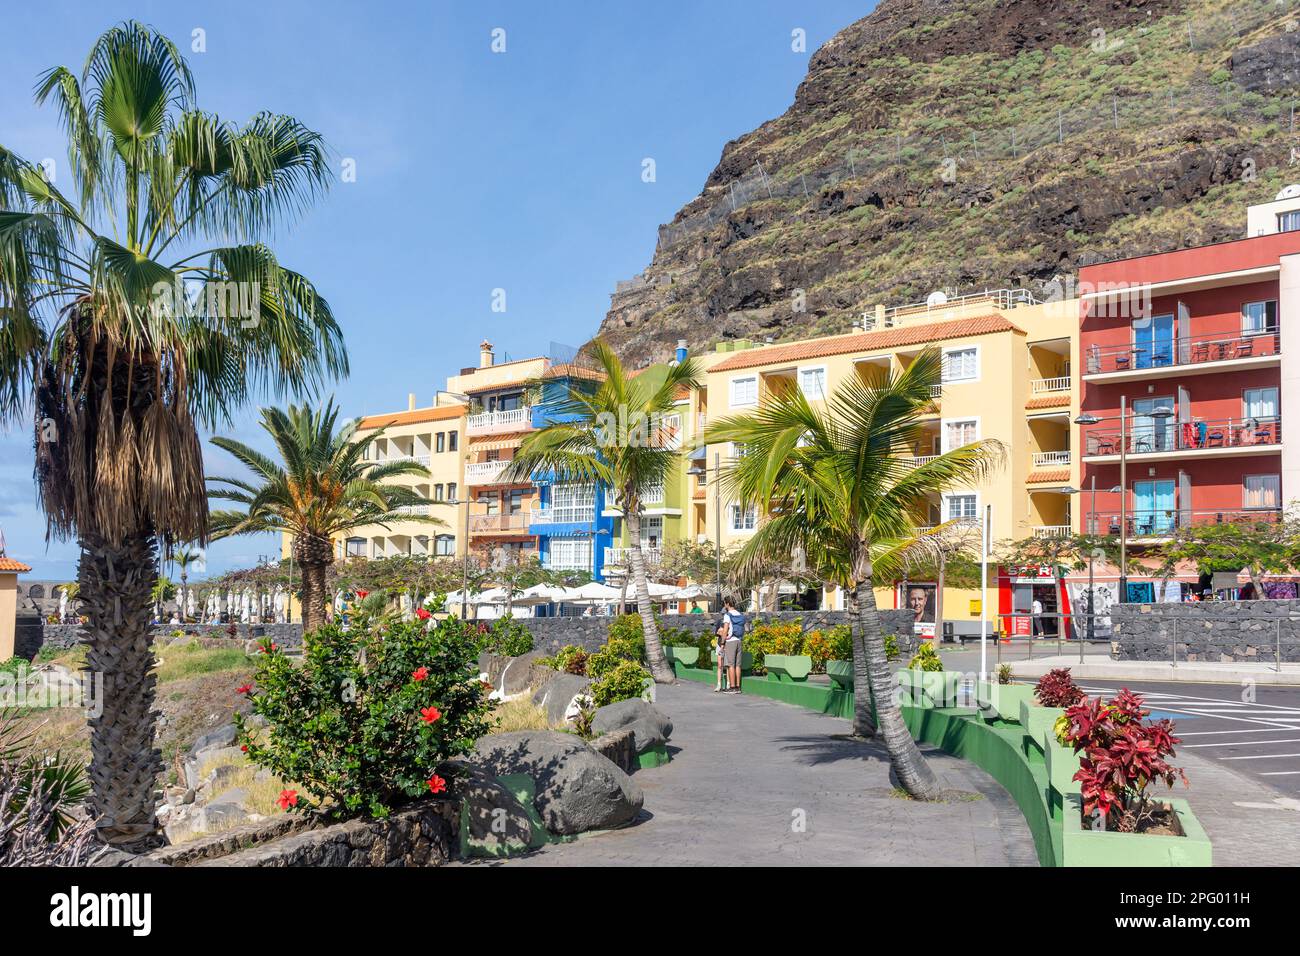 Colourful beach promenade, Puerto de Tazacorte, Tazacorte, La Palma, Canary Islands, Kingdom of Spain Stock Photo